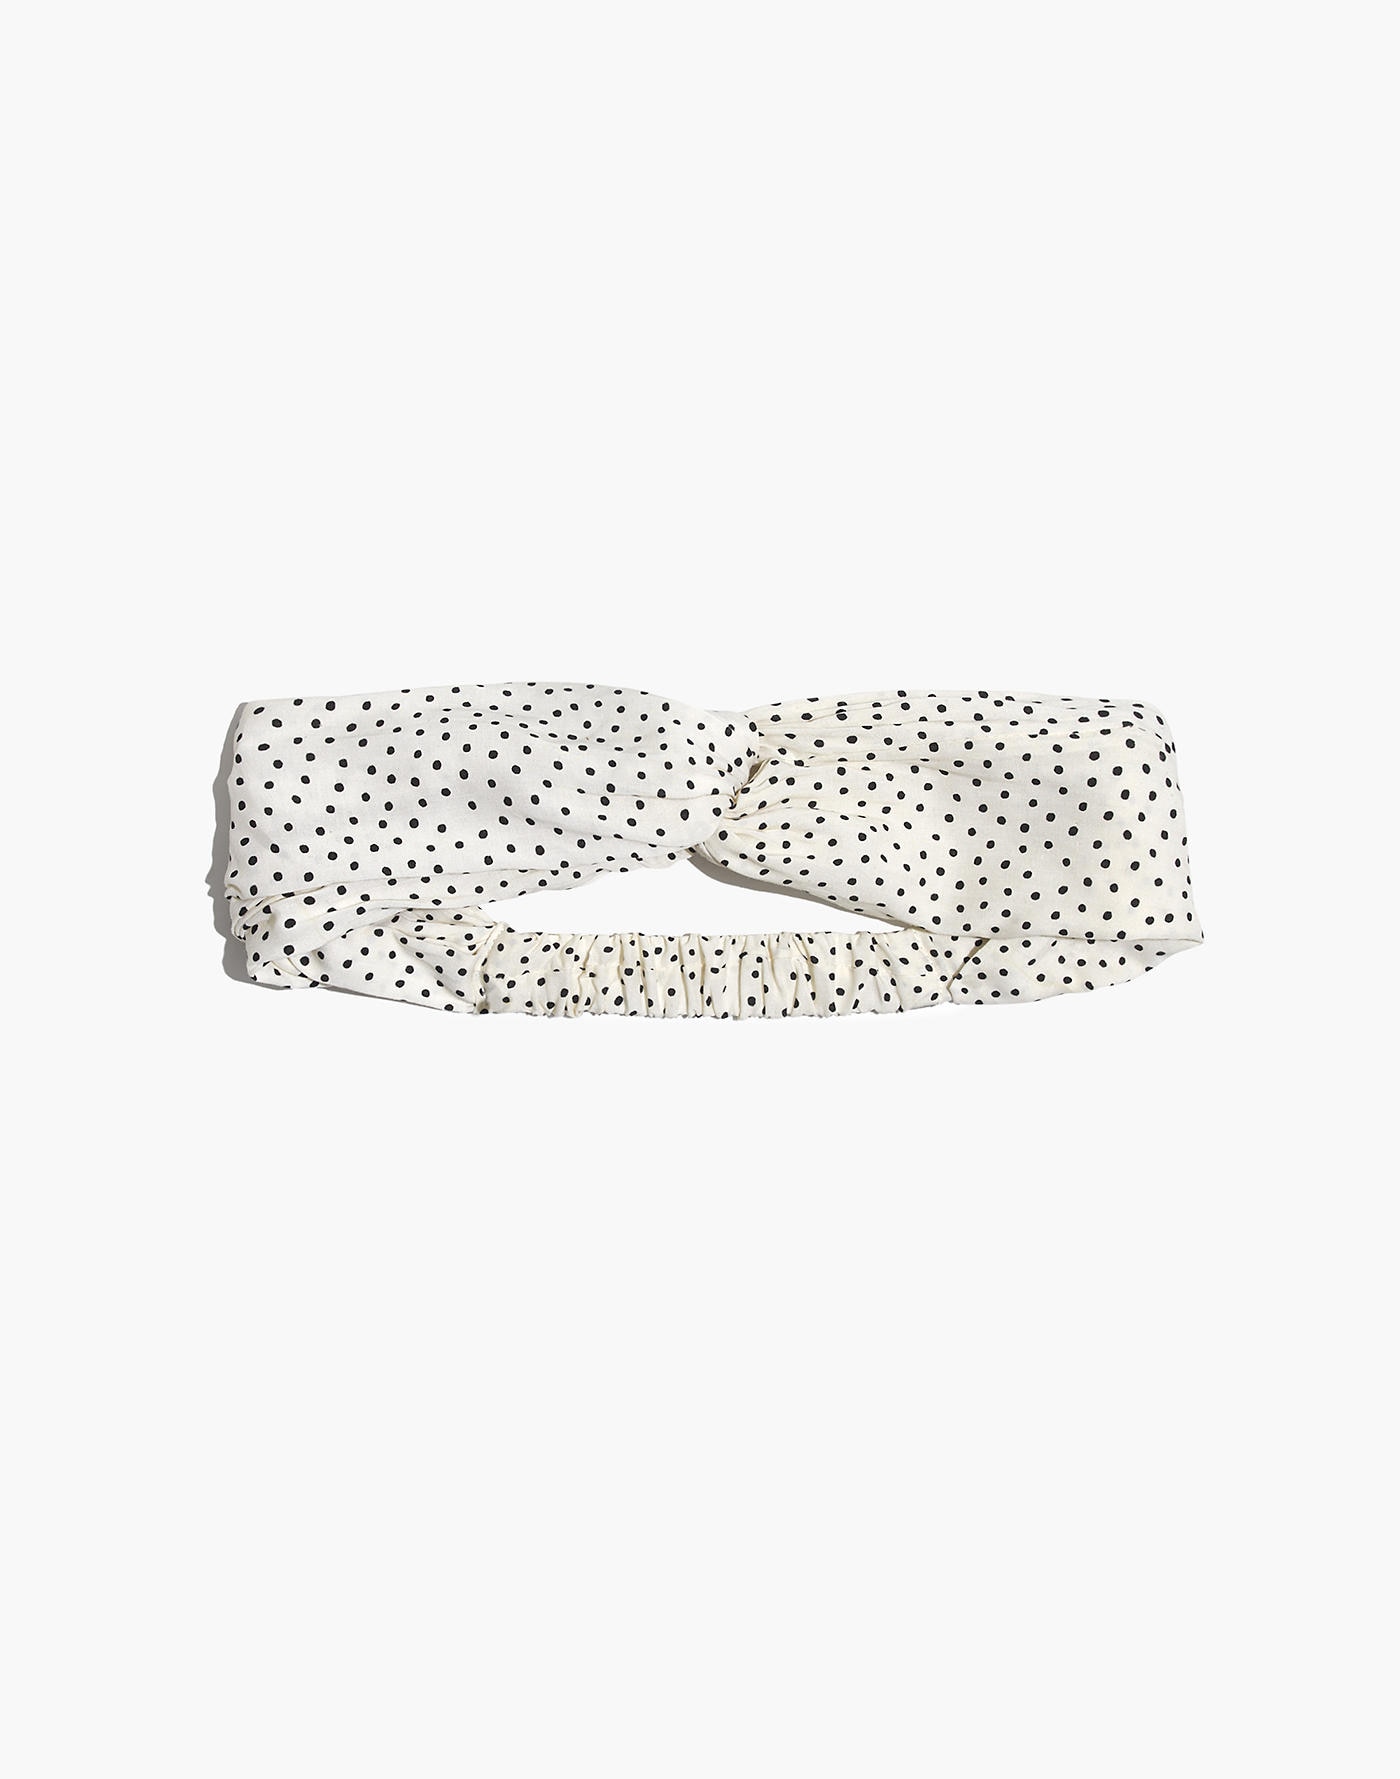 Madewell soft headband in polka dots